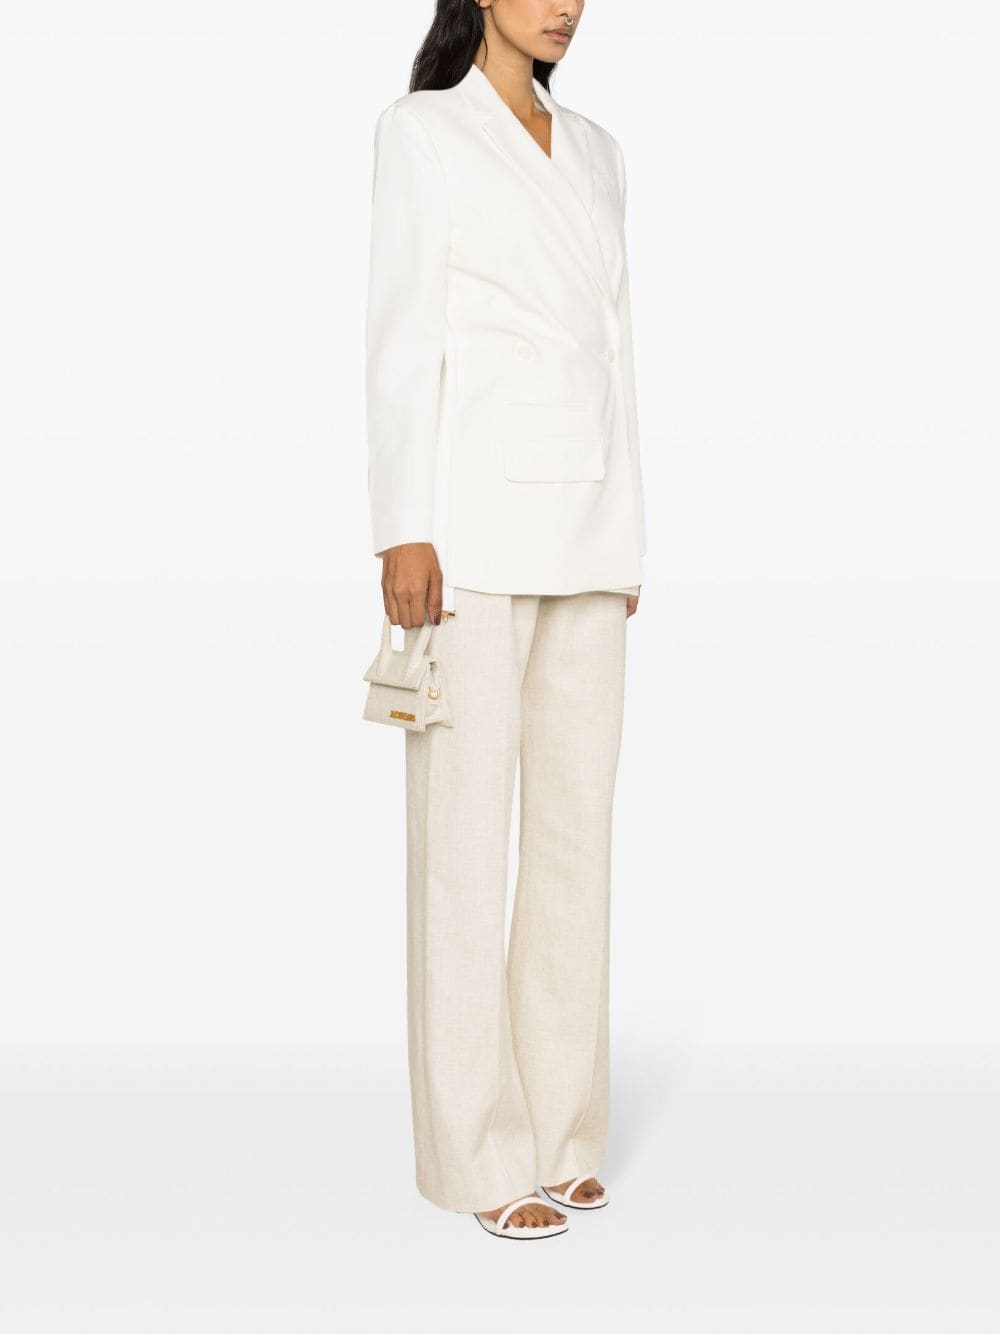 JACQUEMUS White Textured Blazer Jacket - Women's SS24